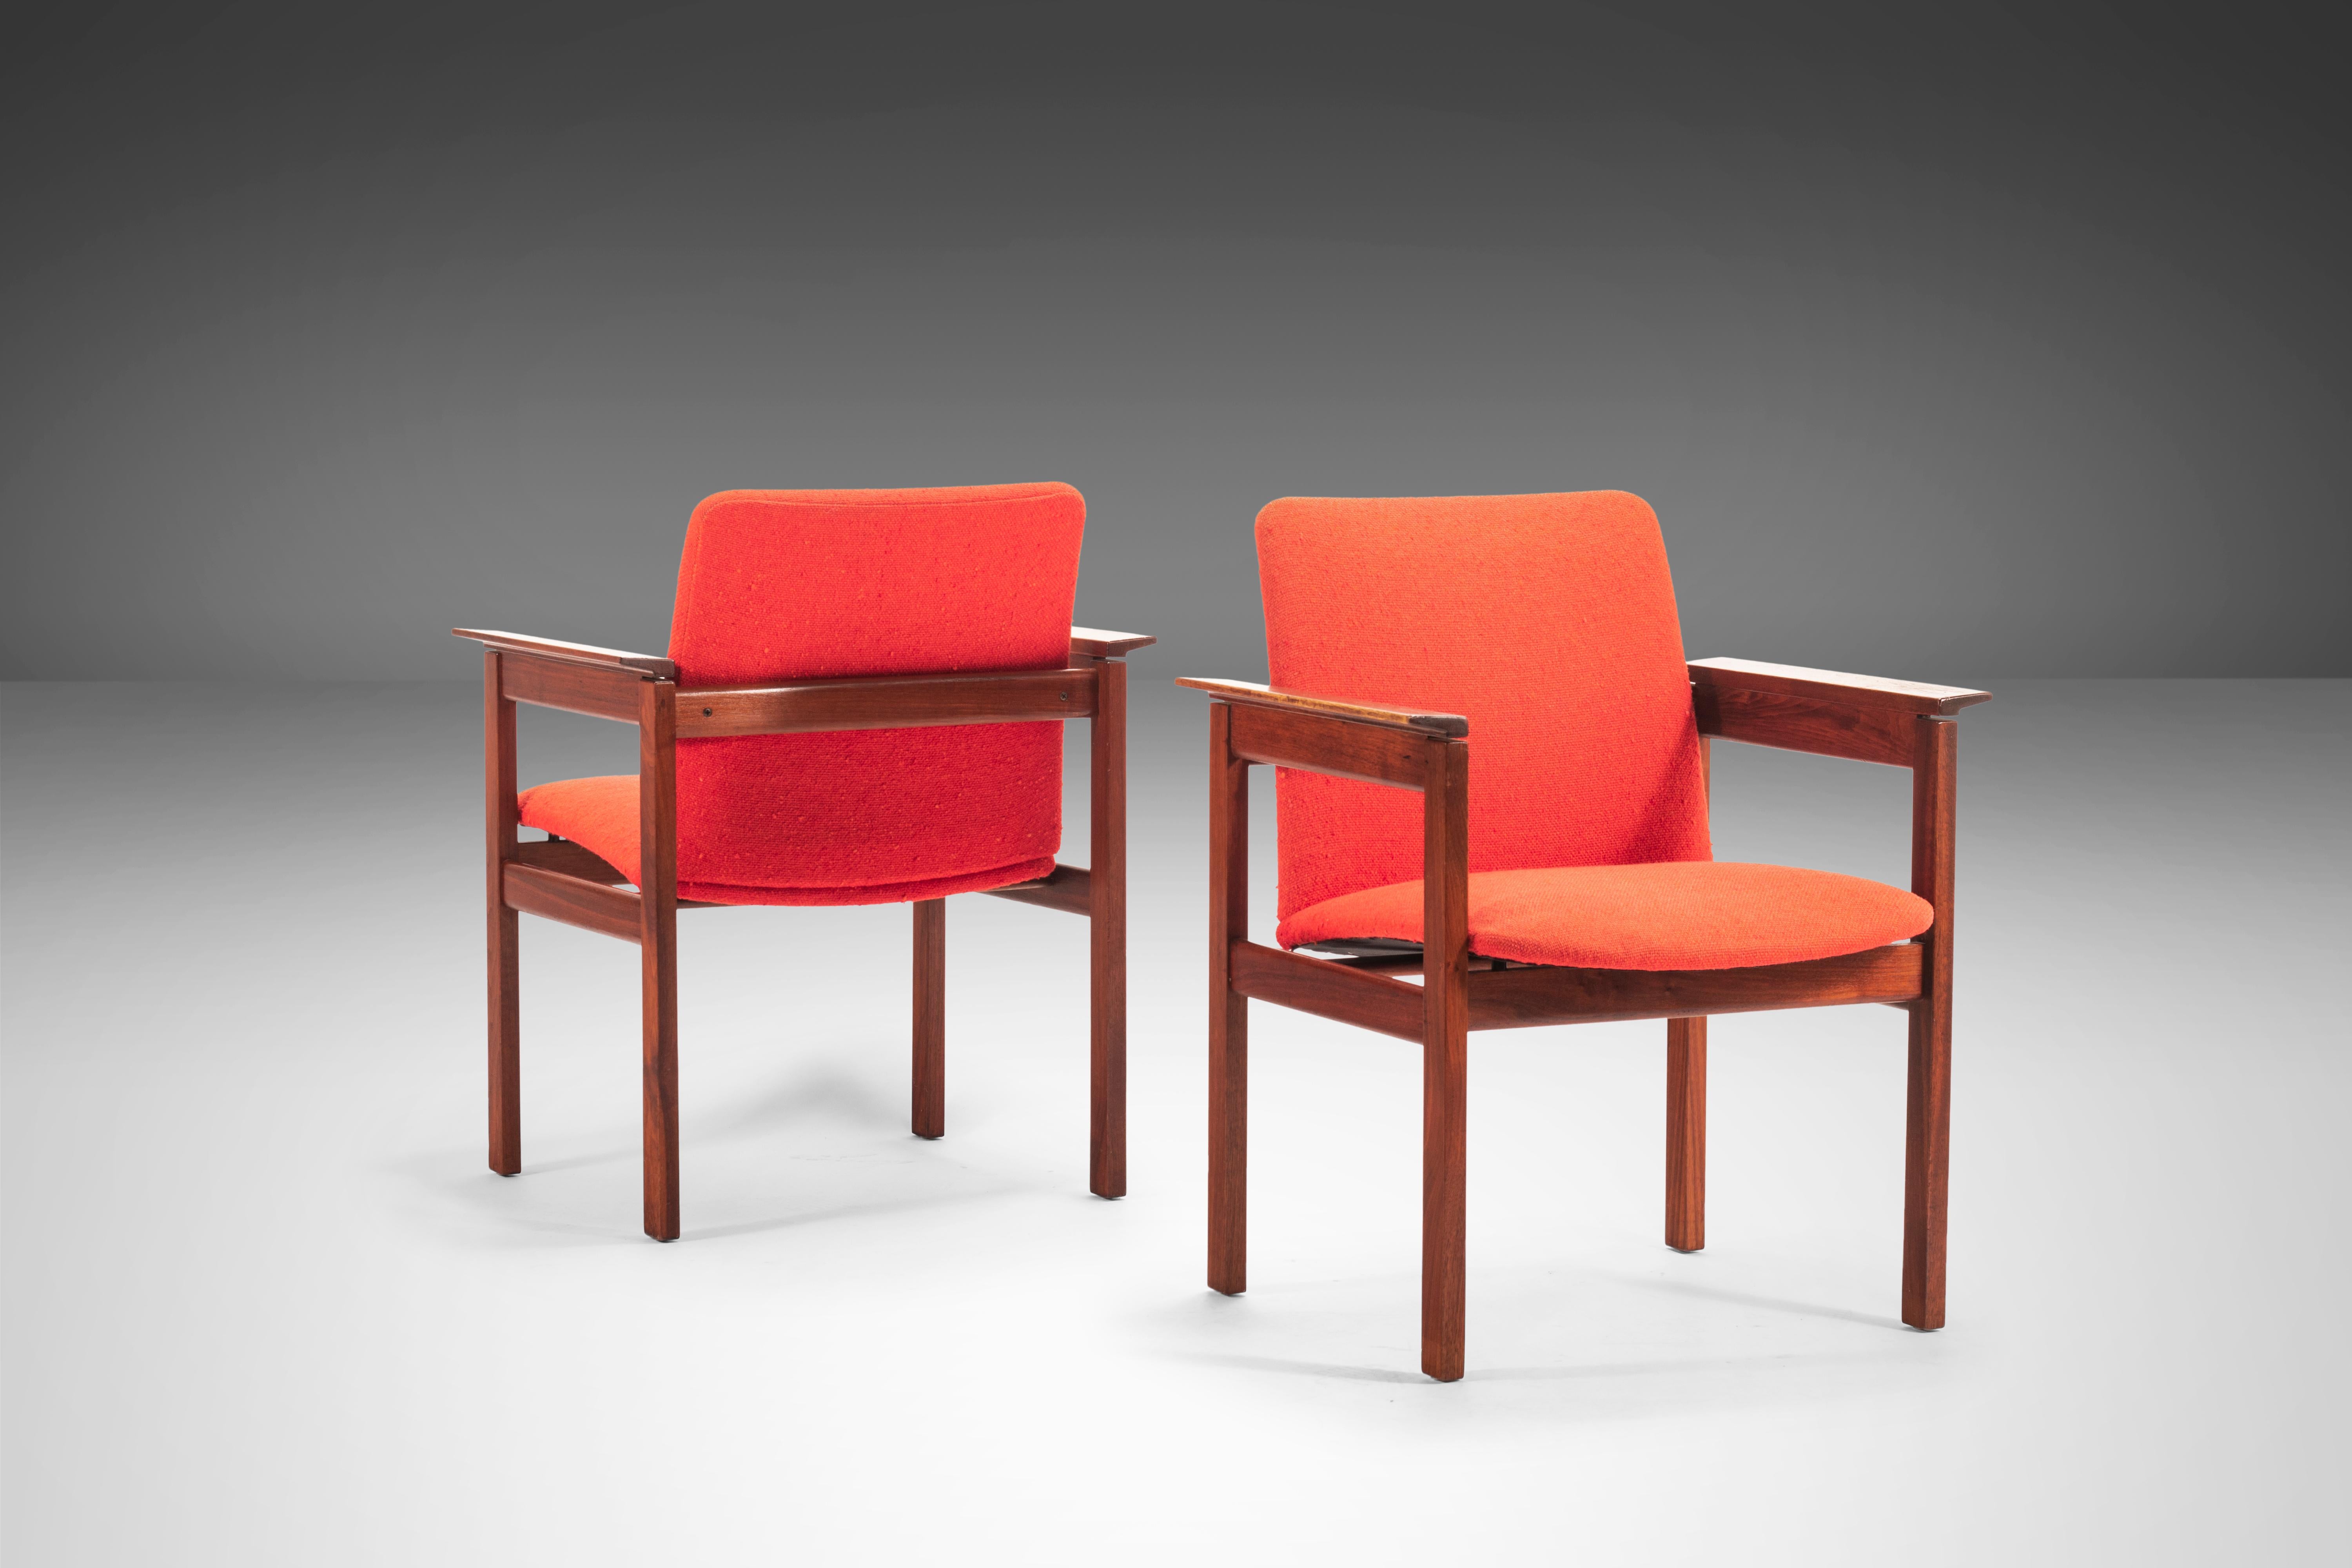 Cet ensemble de chaises est destiné aux collectionneurs au goût exceptionnel, car il s'agit de l'une des conceptions les plus profondes de Jens Risom. Rembourré en tissu tricoté rouge d'origine. Construit sur un cadre en noyer massif, il présente